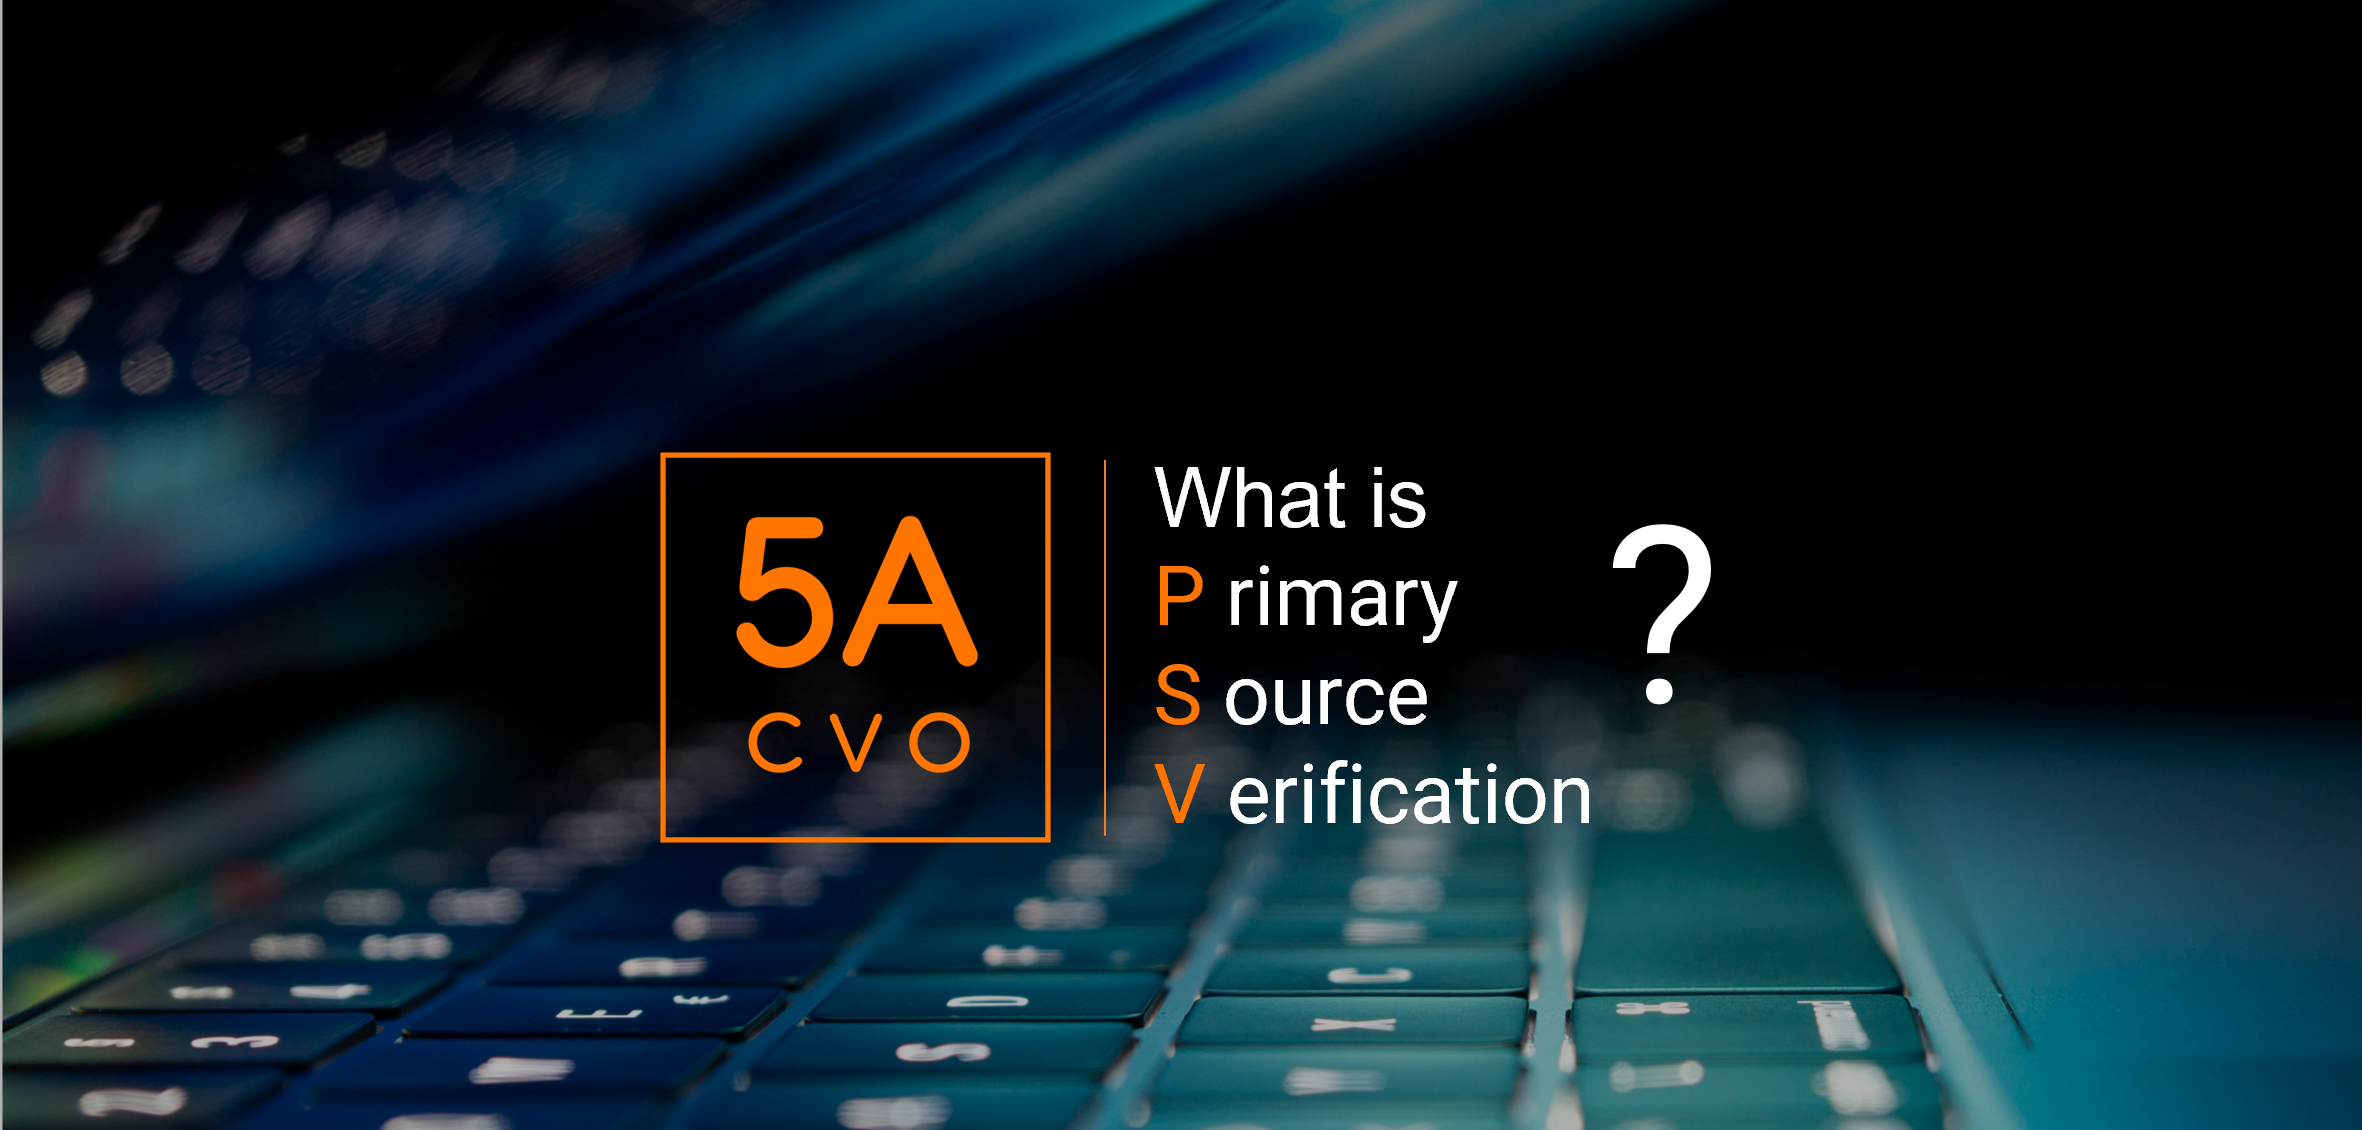 5ACVO.com Primary Source Verification